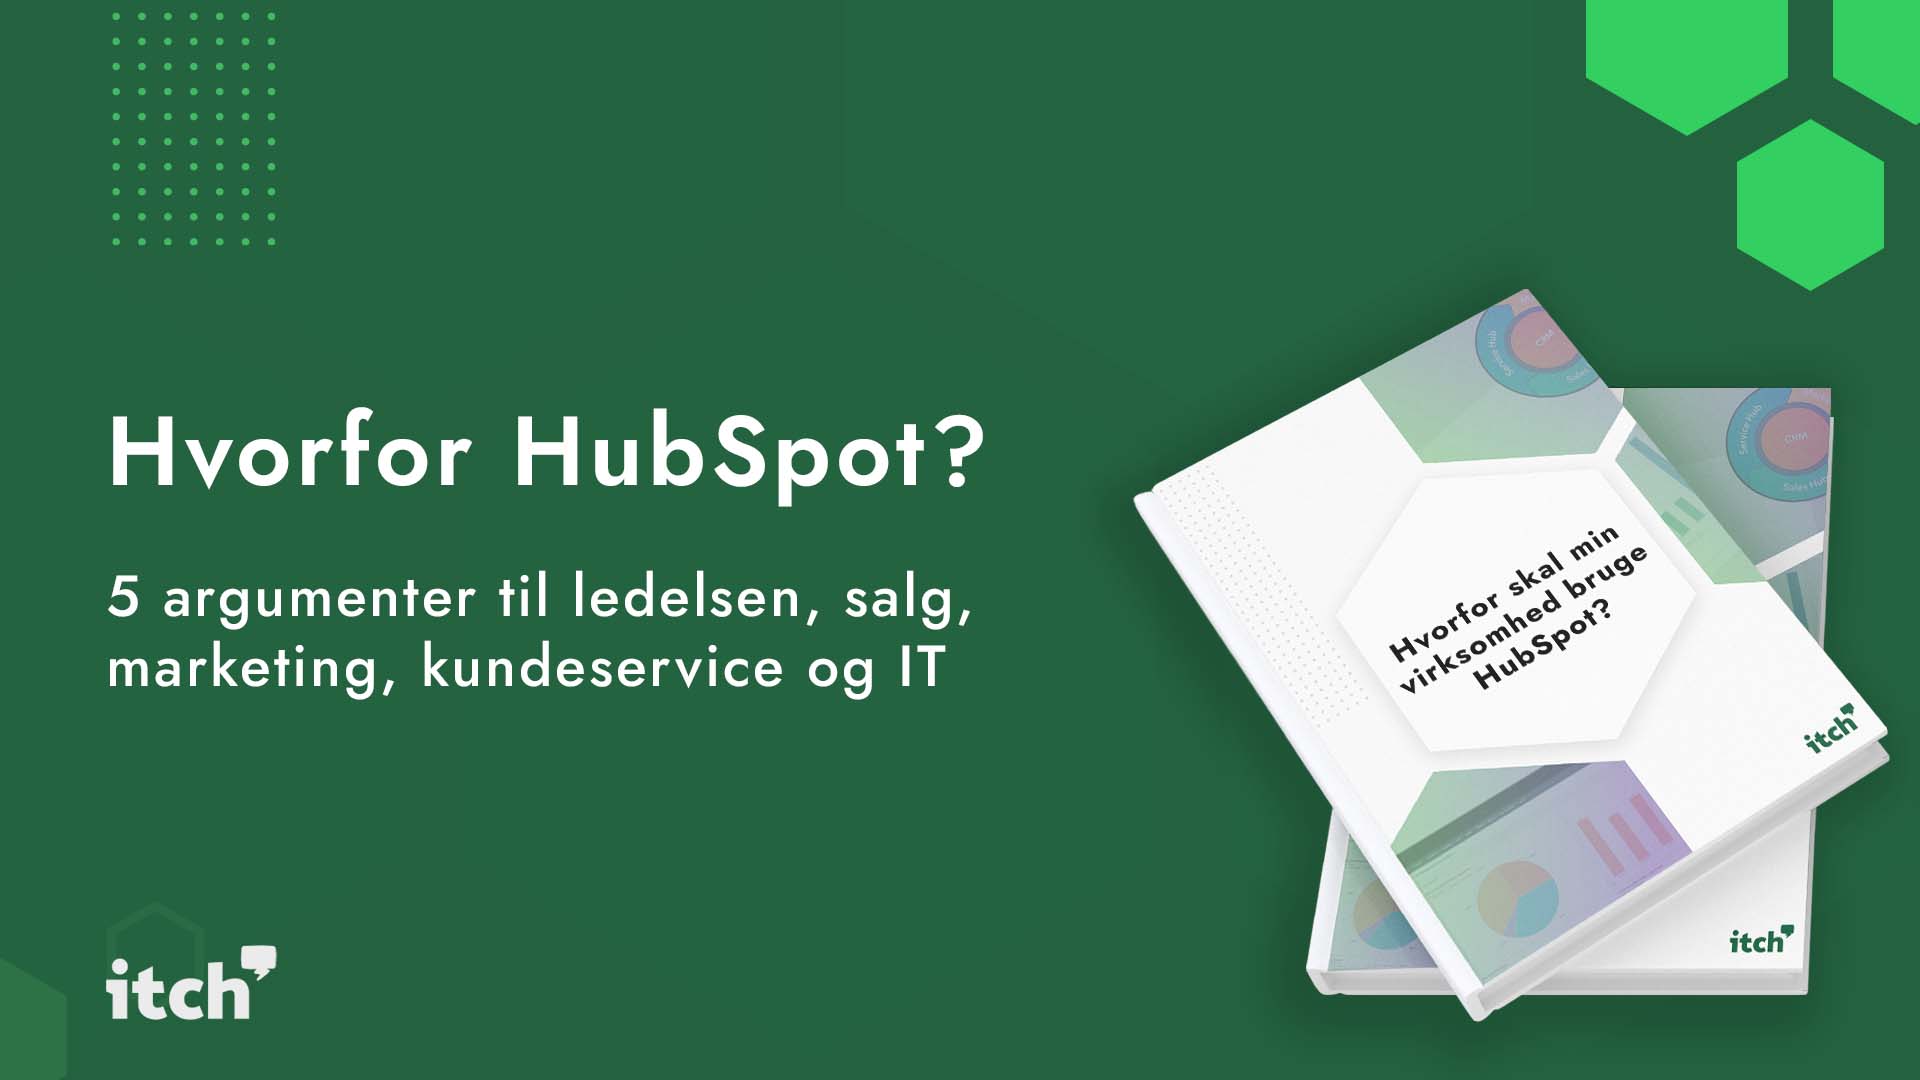 Hvorfor skal min virksomhed bruge HubSpot?